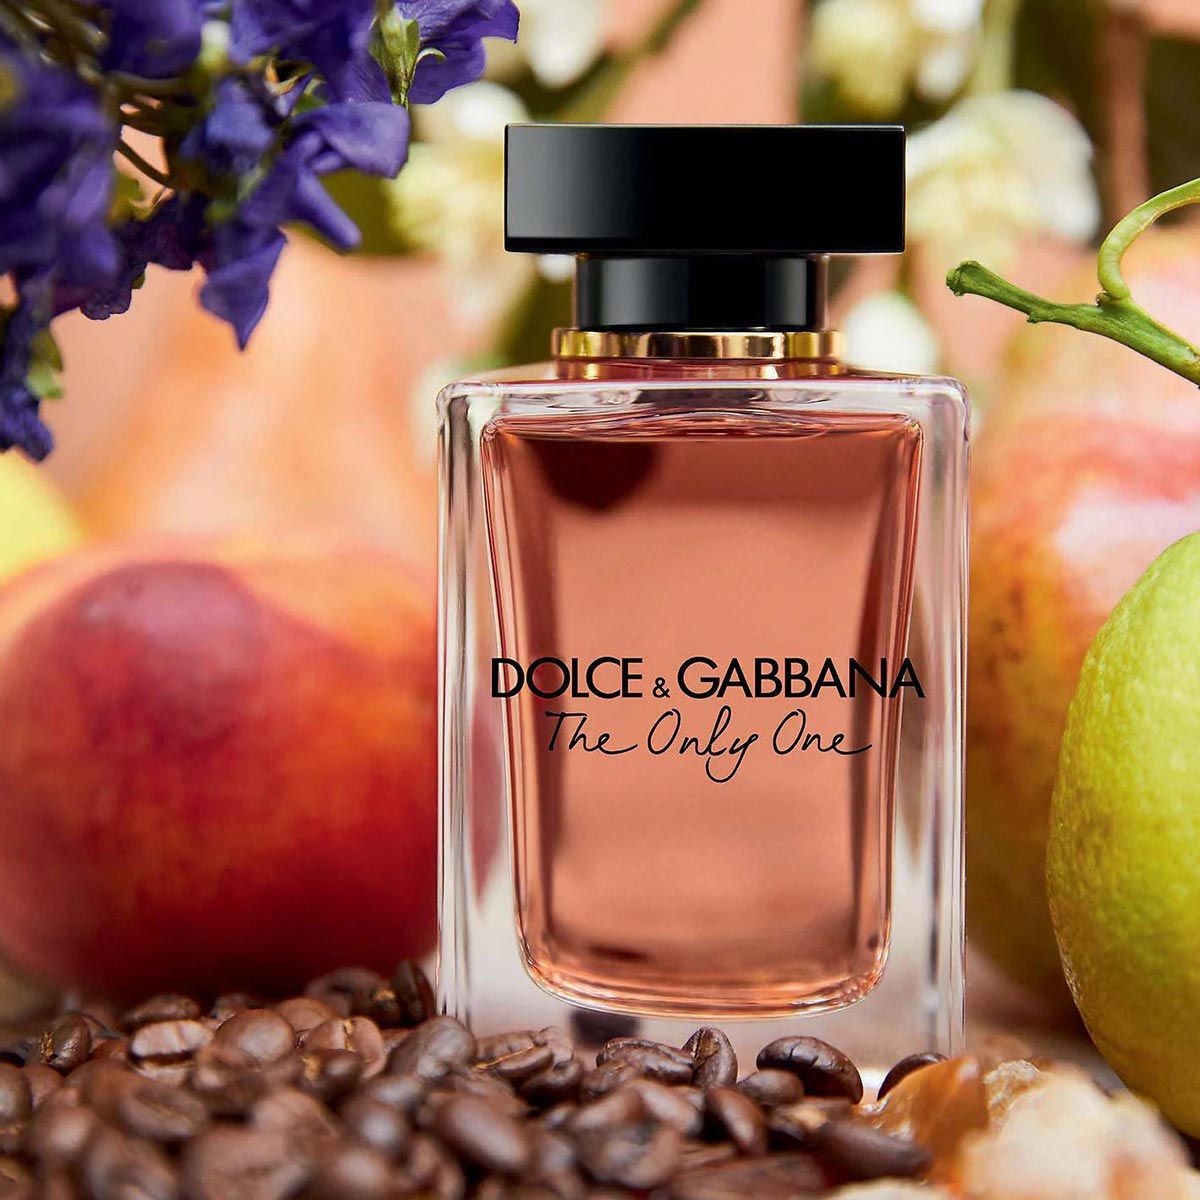  Dolce Gabbana The Only One Eau de Parfum 